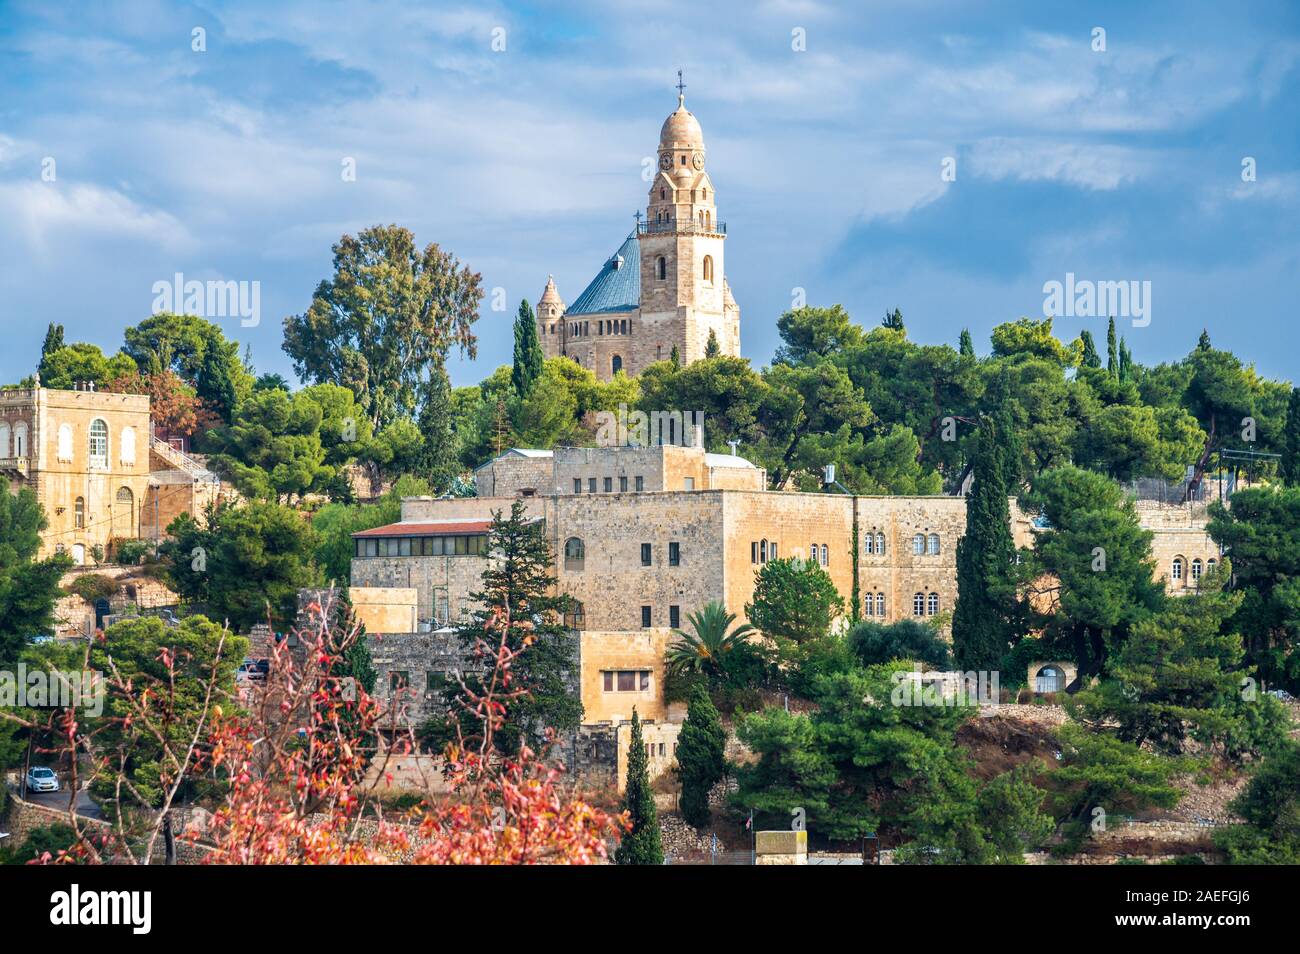 Jerusalén, Israel / 9 dic 2019: Dormición Abadía en el Monte Sión en Jerusalén, justo fuera de la Puerta de Sión, creído para ser el lugar de descanso final de la Virg Foto de stock